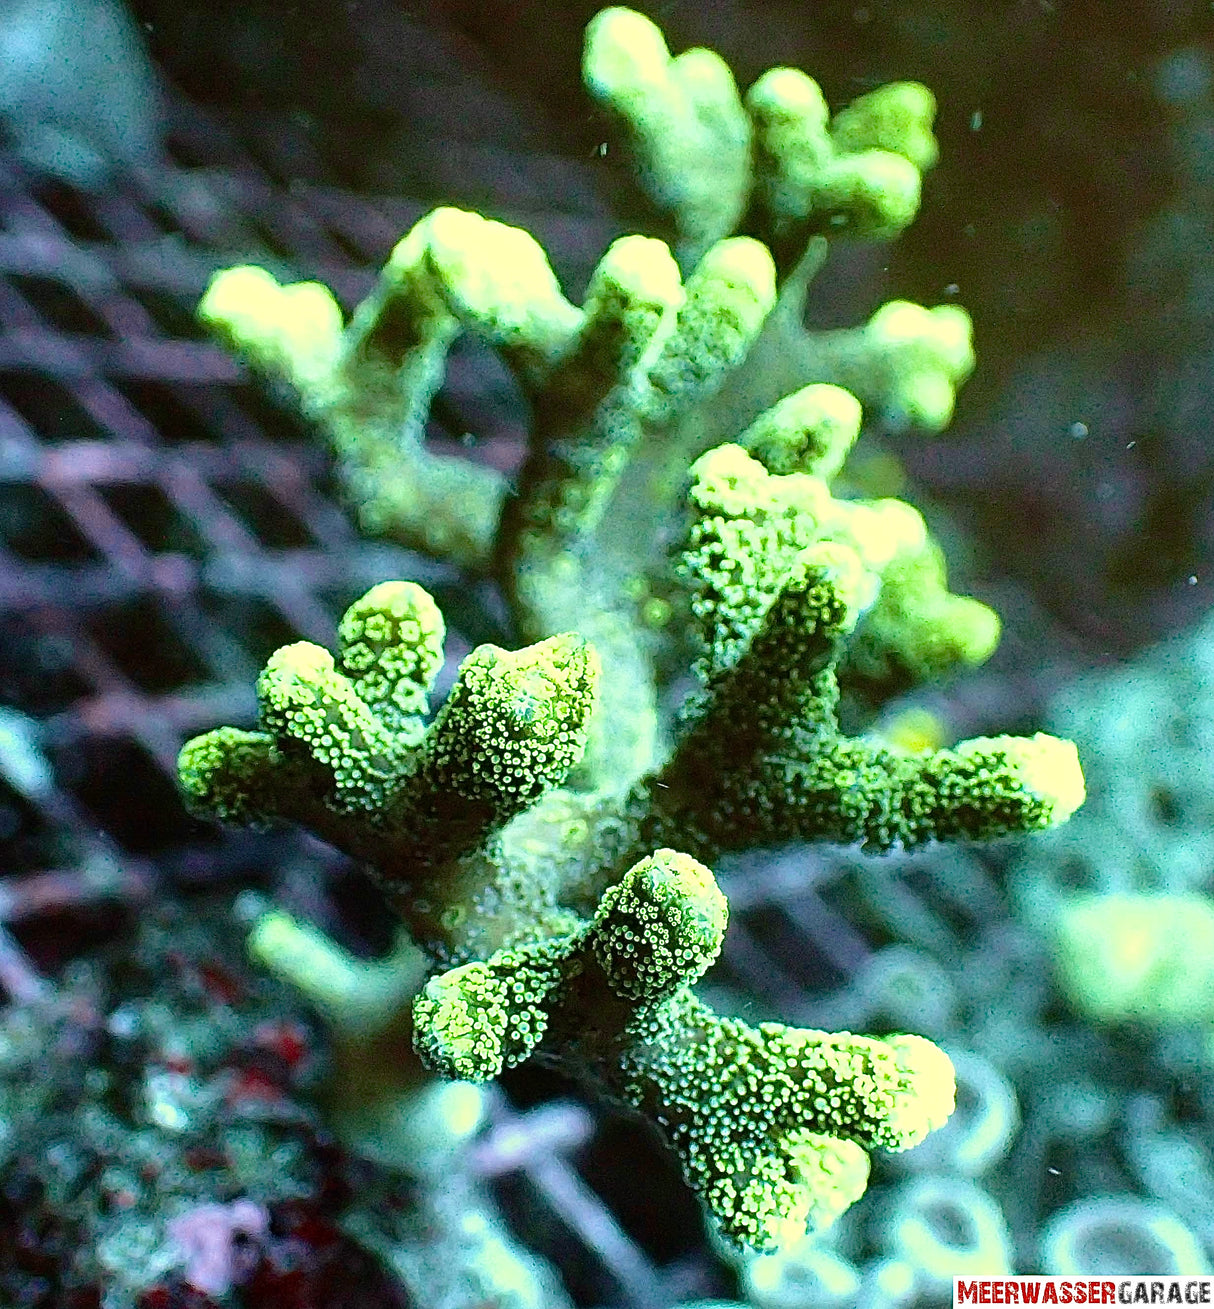 Seriatopora Caliendrum